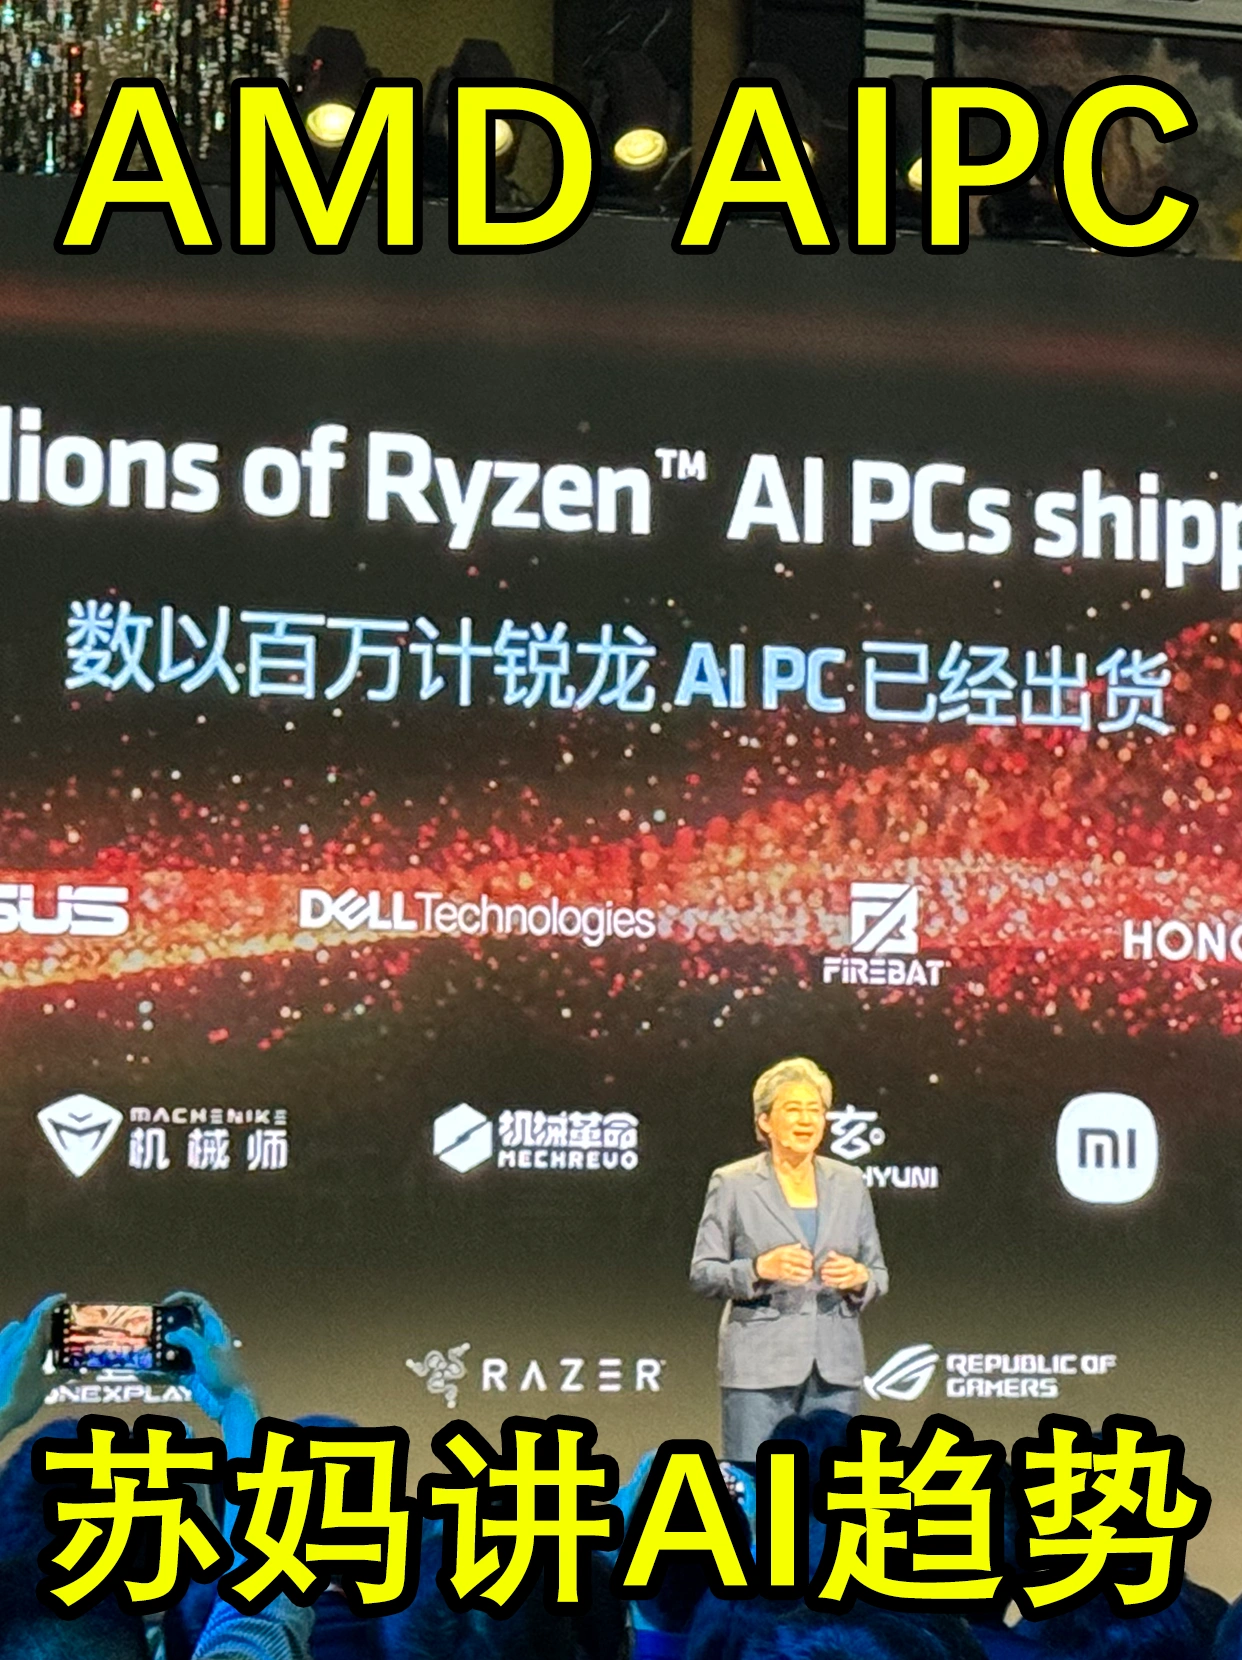 玄派与你在AMD AI PC峰会 看苏妈讲AI趋势啦